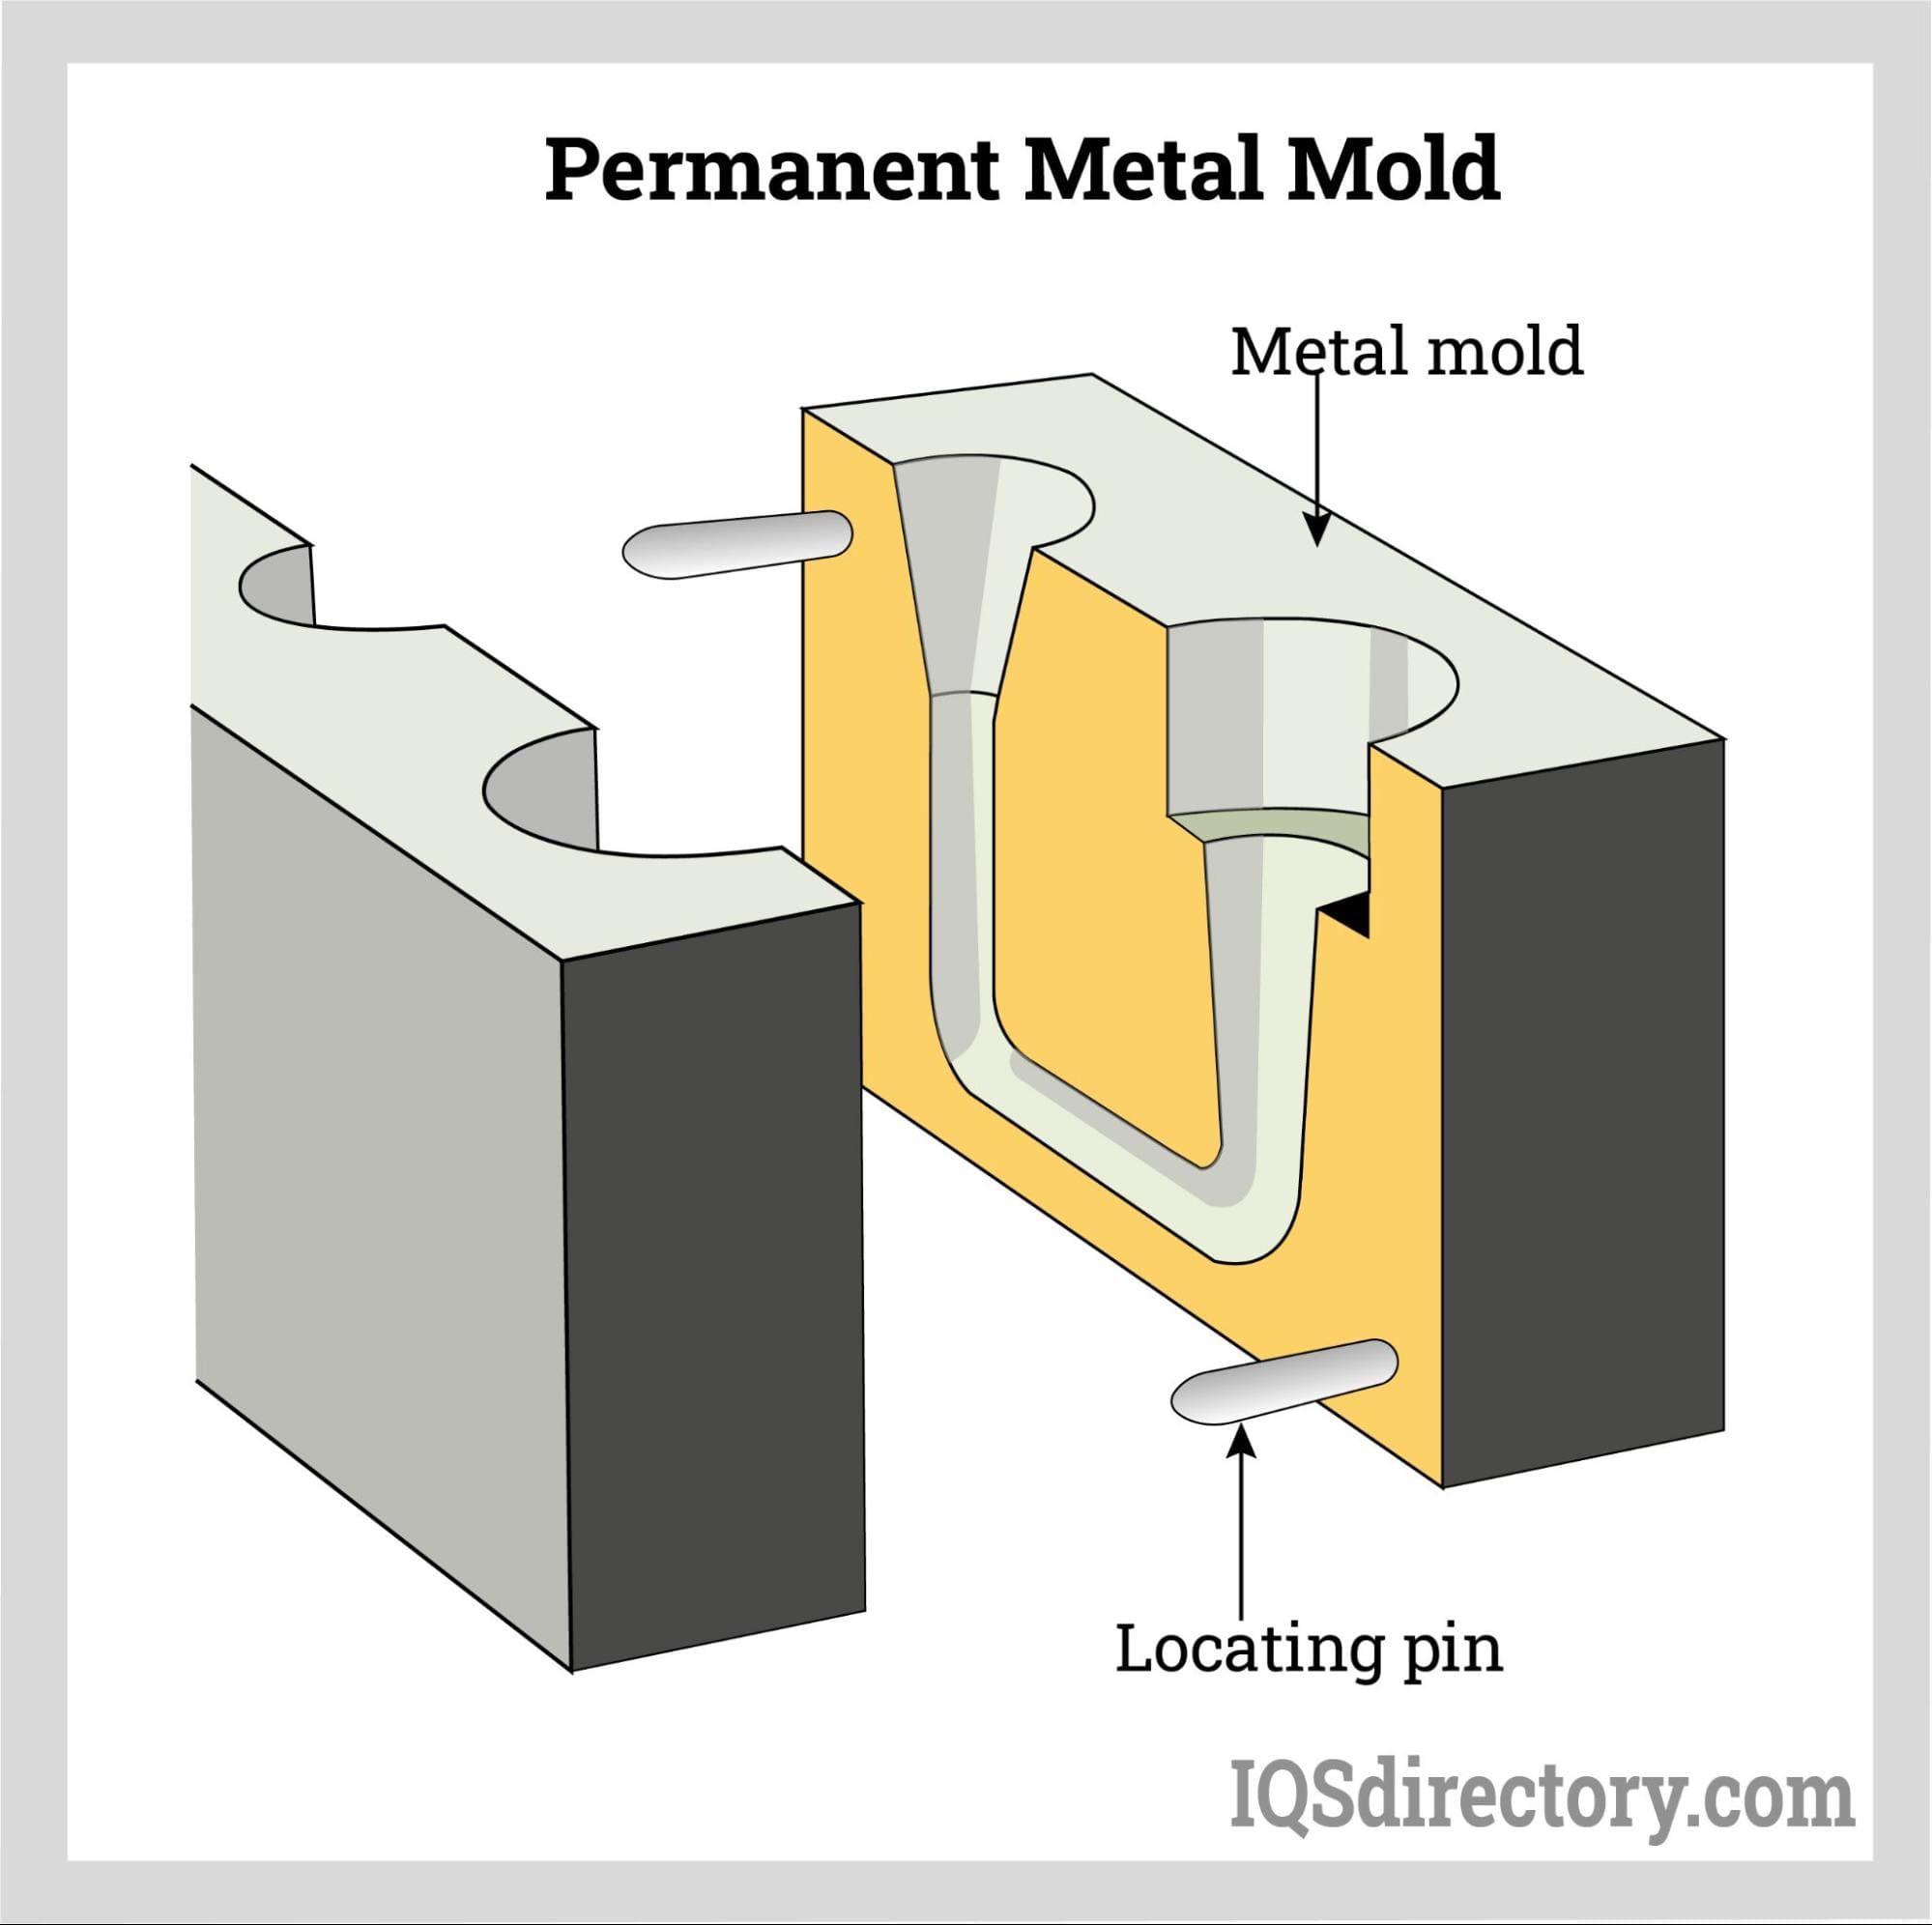 Permanent Metal Mold